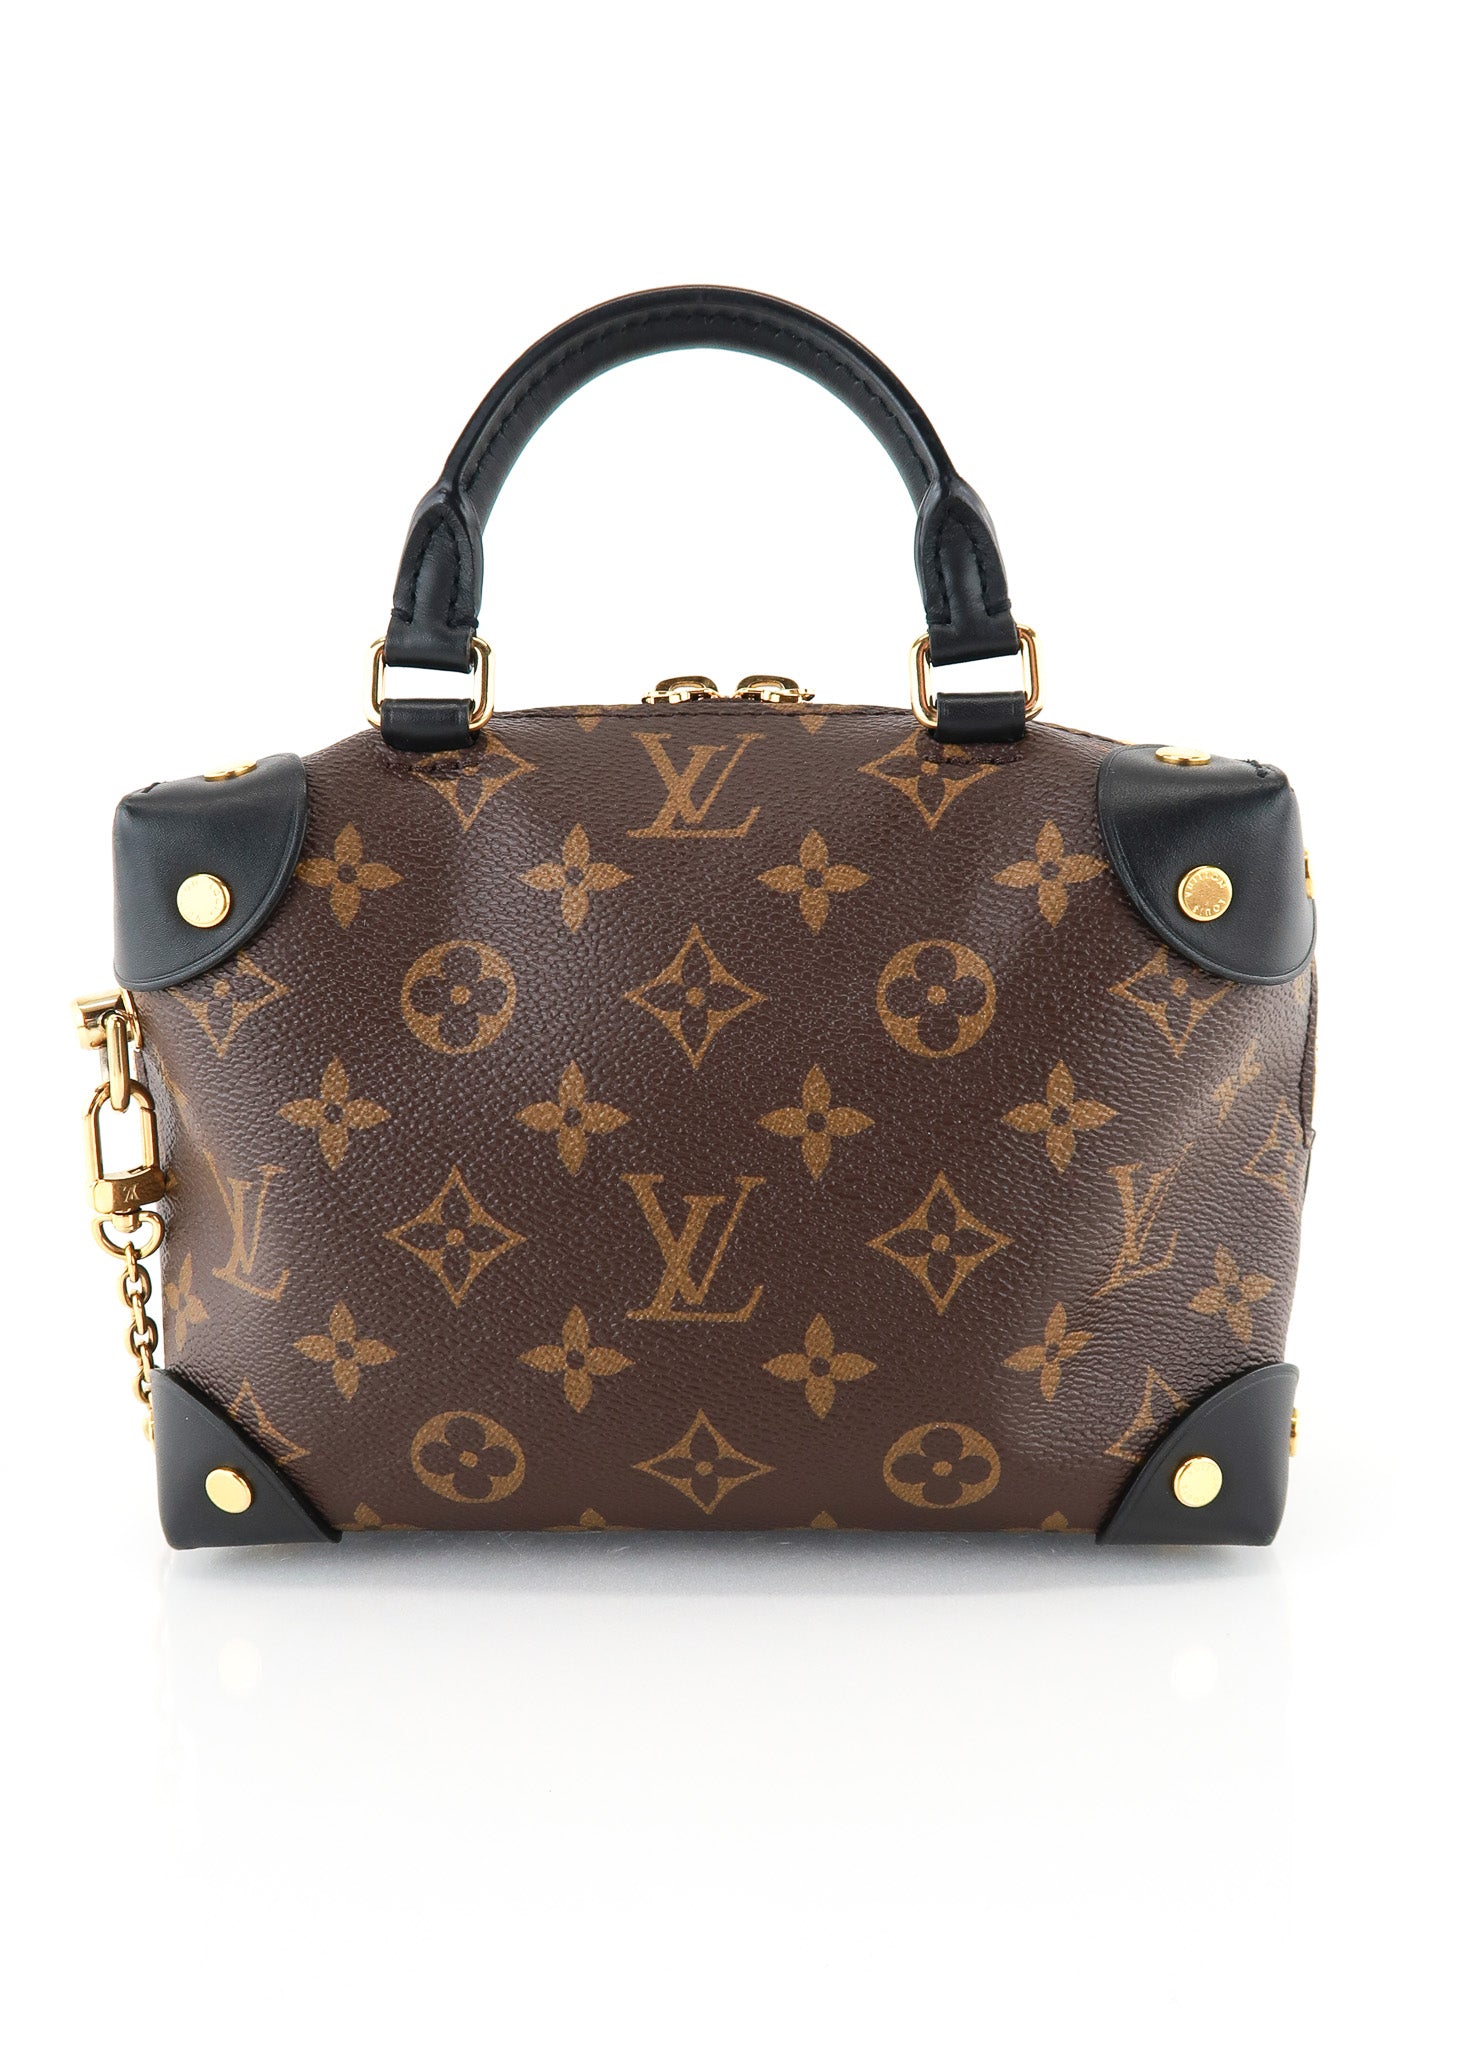 Louis+Vuitton+Petite+Malle+Souple+Satchel+PM+Black+Leather for sale online